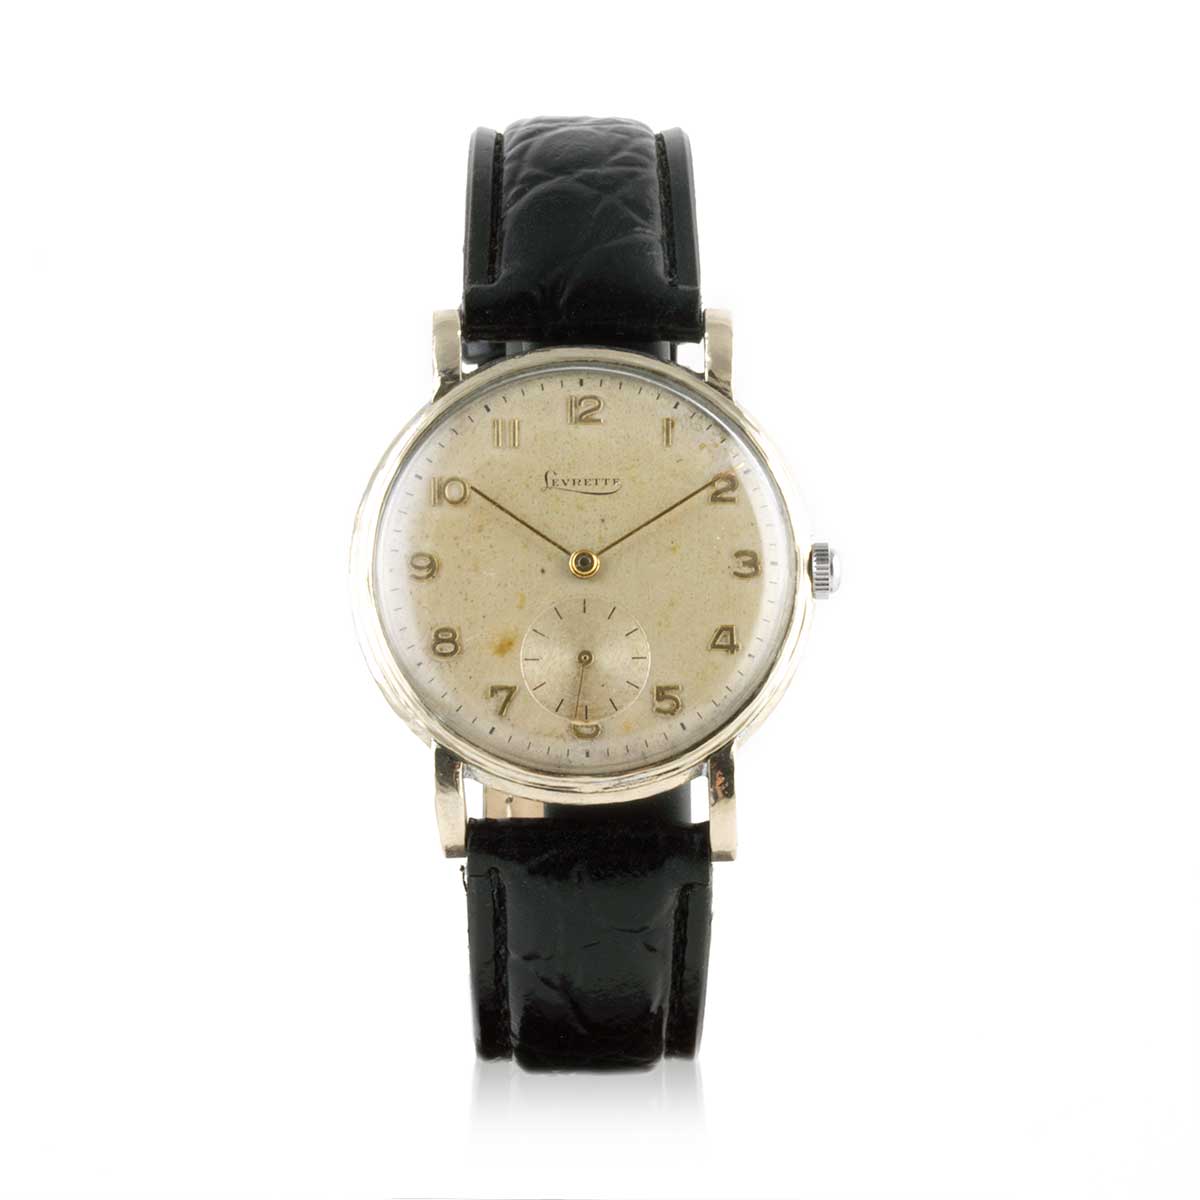 Second-hand watch - Levrette vintage - 900€